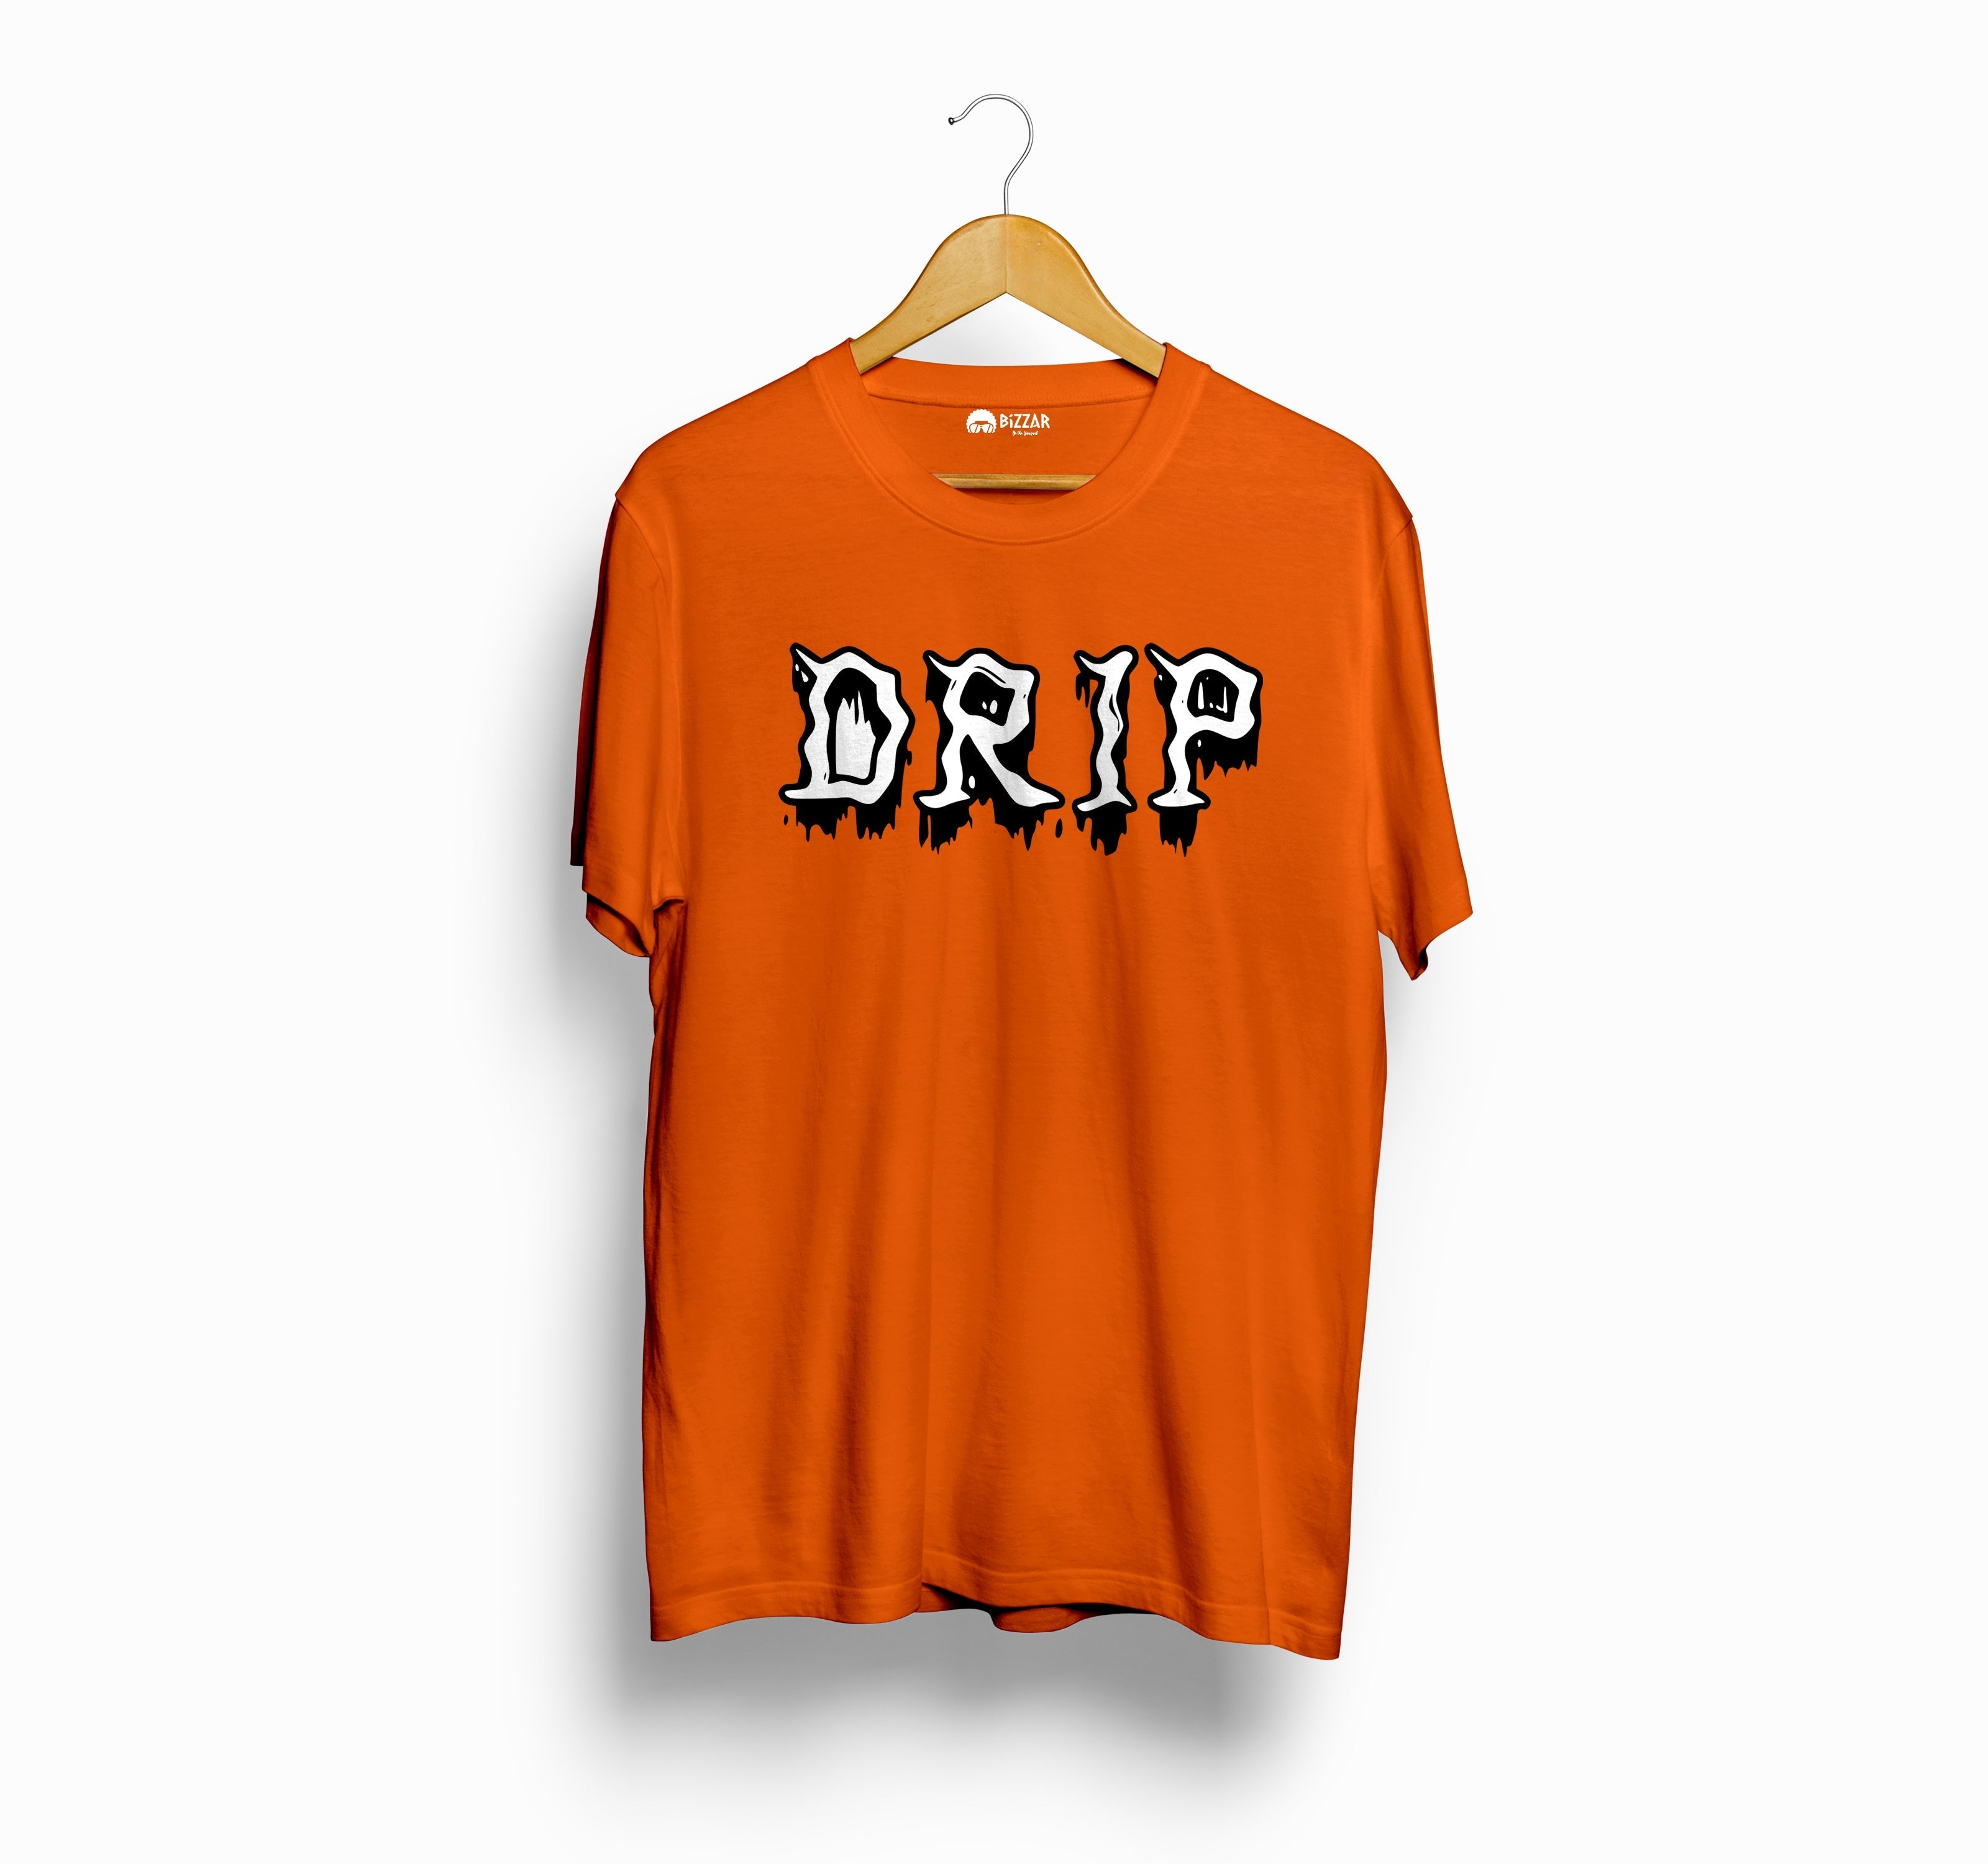 Bizzar's Drip Orange T-Shirt